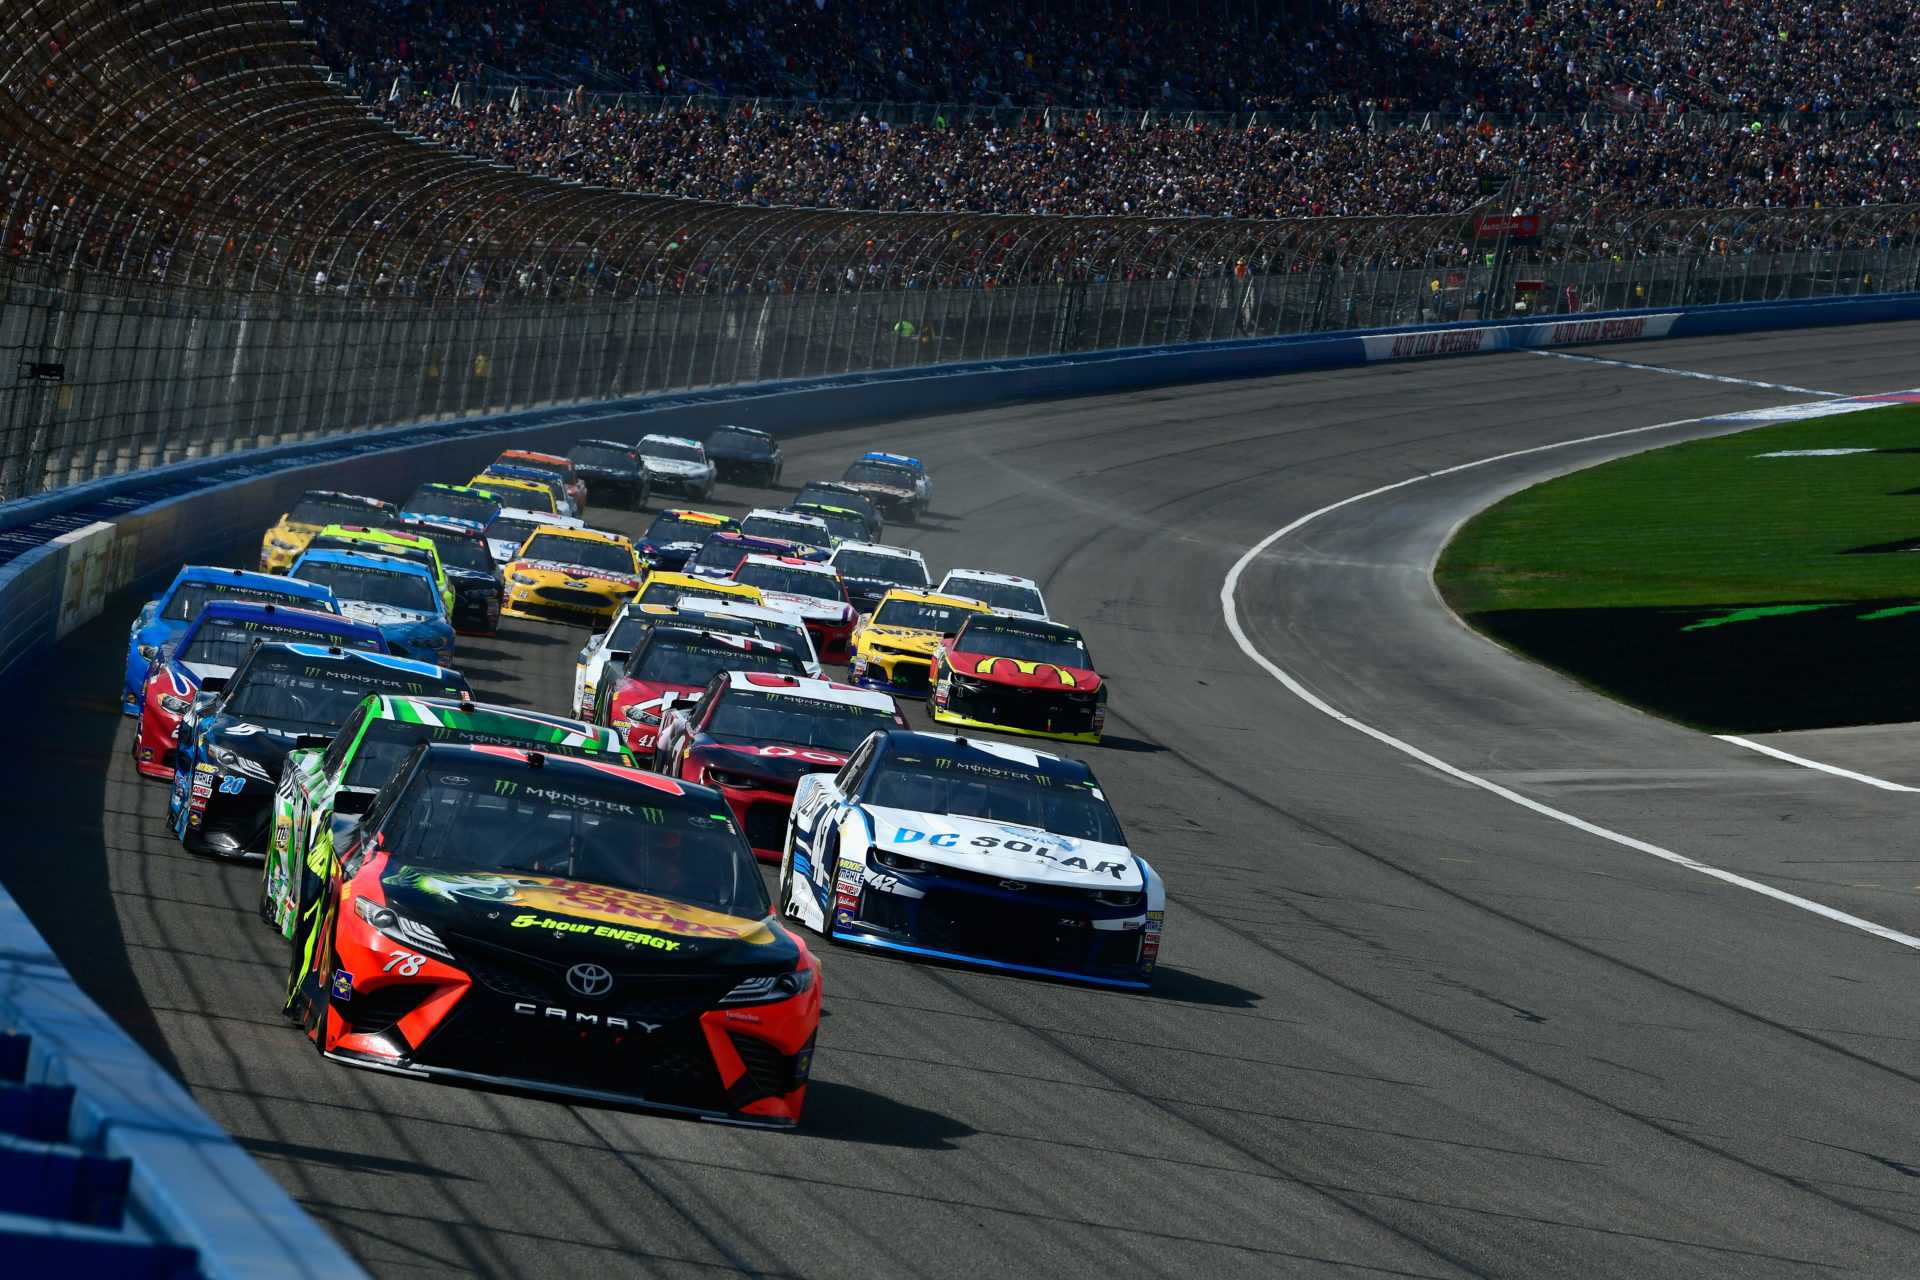 NASCAR Conversion de l'Auto Club Speedway en une courte piste, ce que cela signifie pour l'avenir?